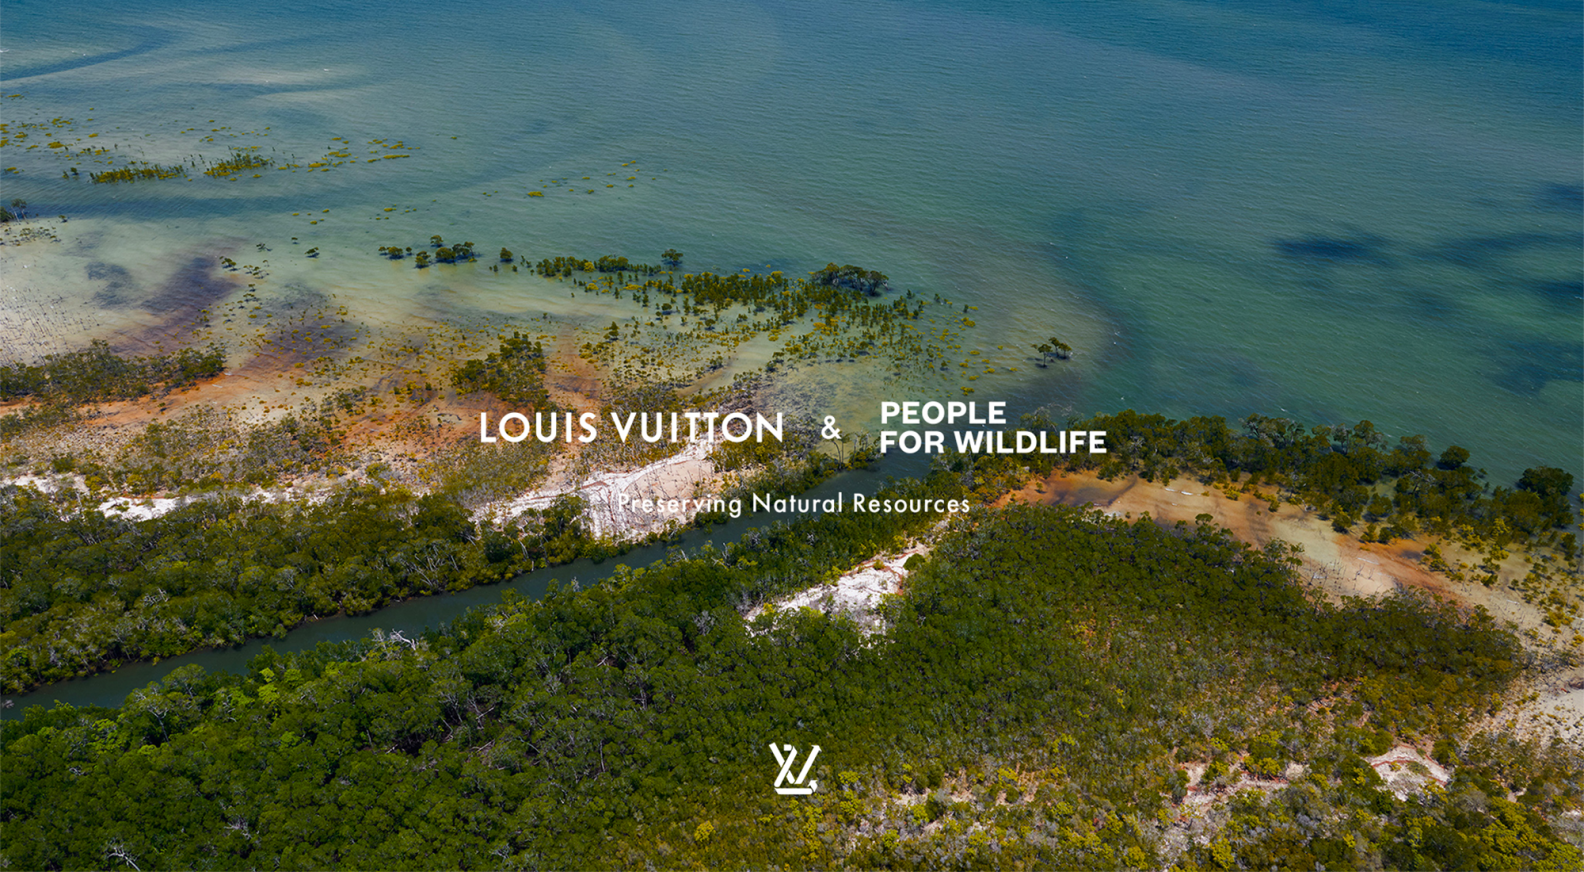 Louis Vuitton's Tropical Journey